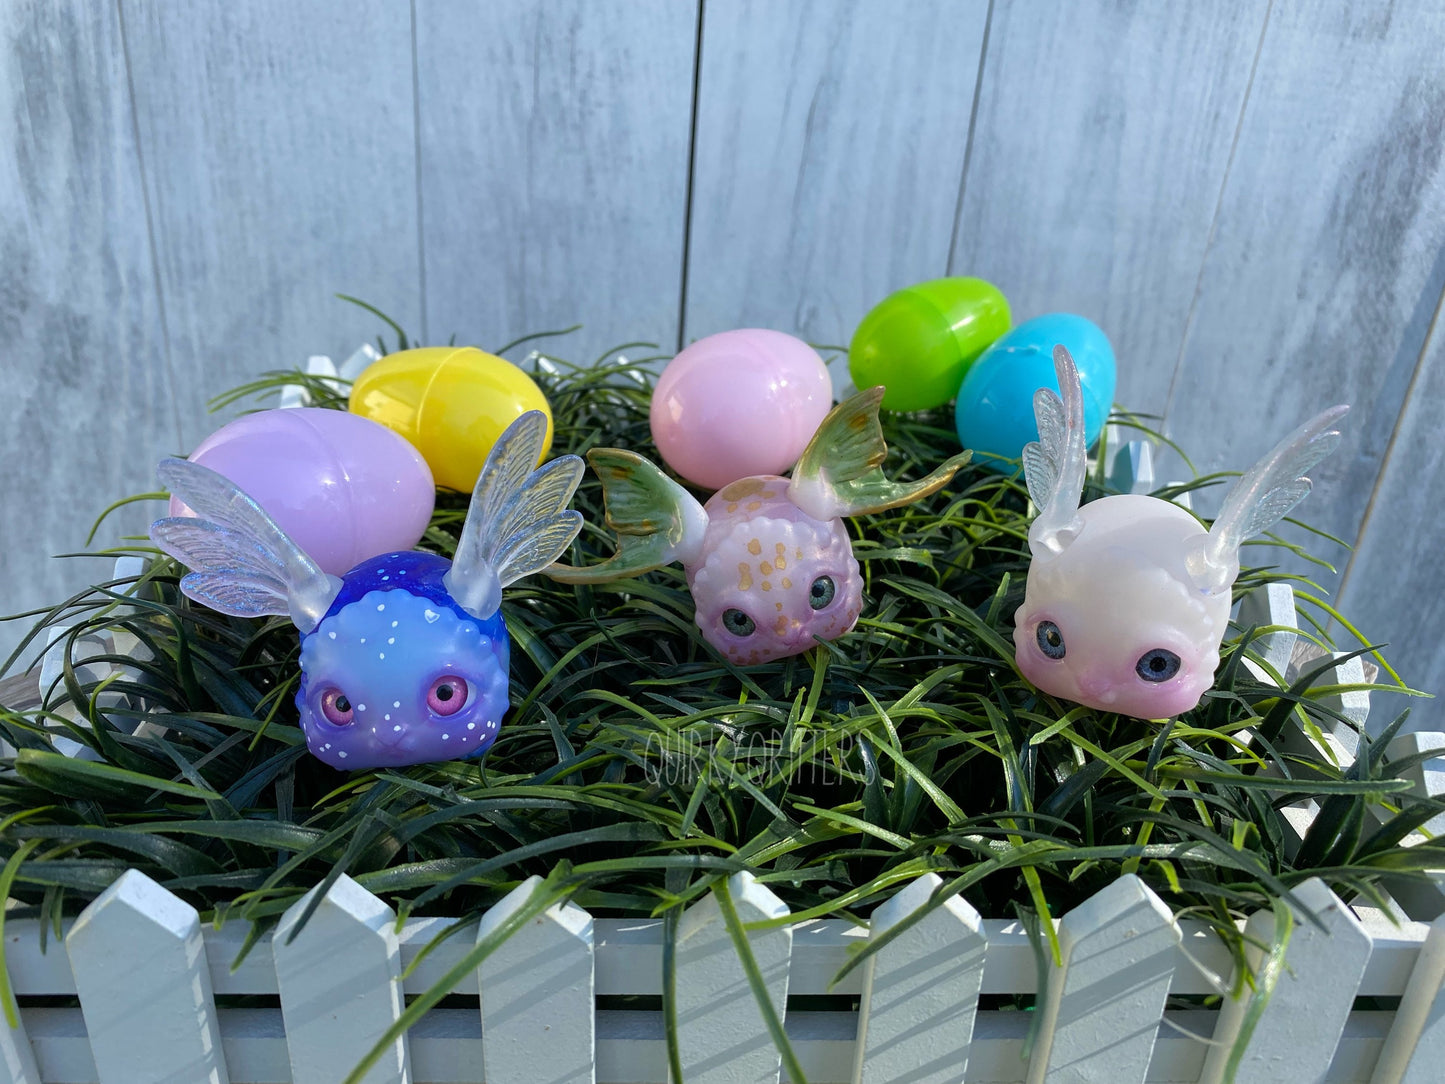 Fairydust Bunnies: a Tiny 3D Printed Fairy Friend